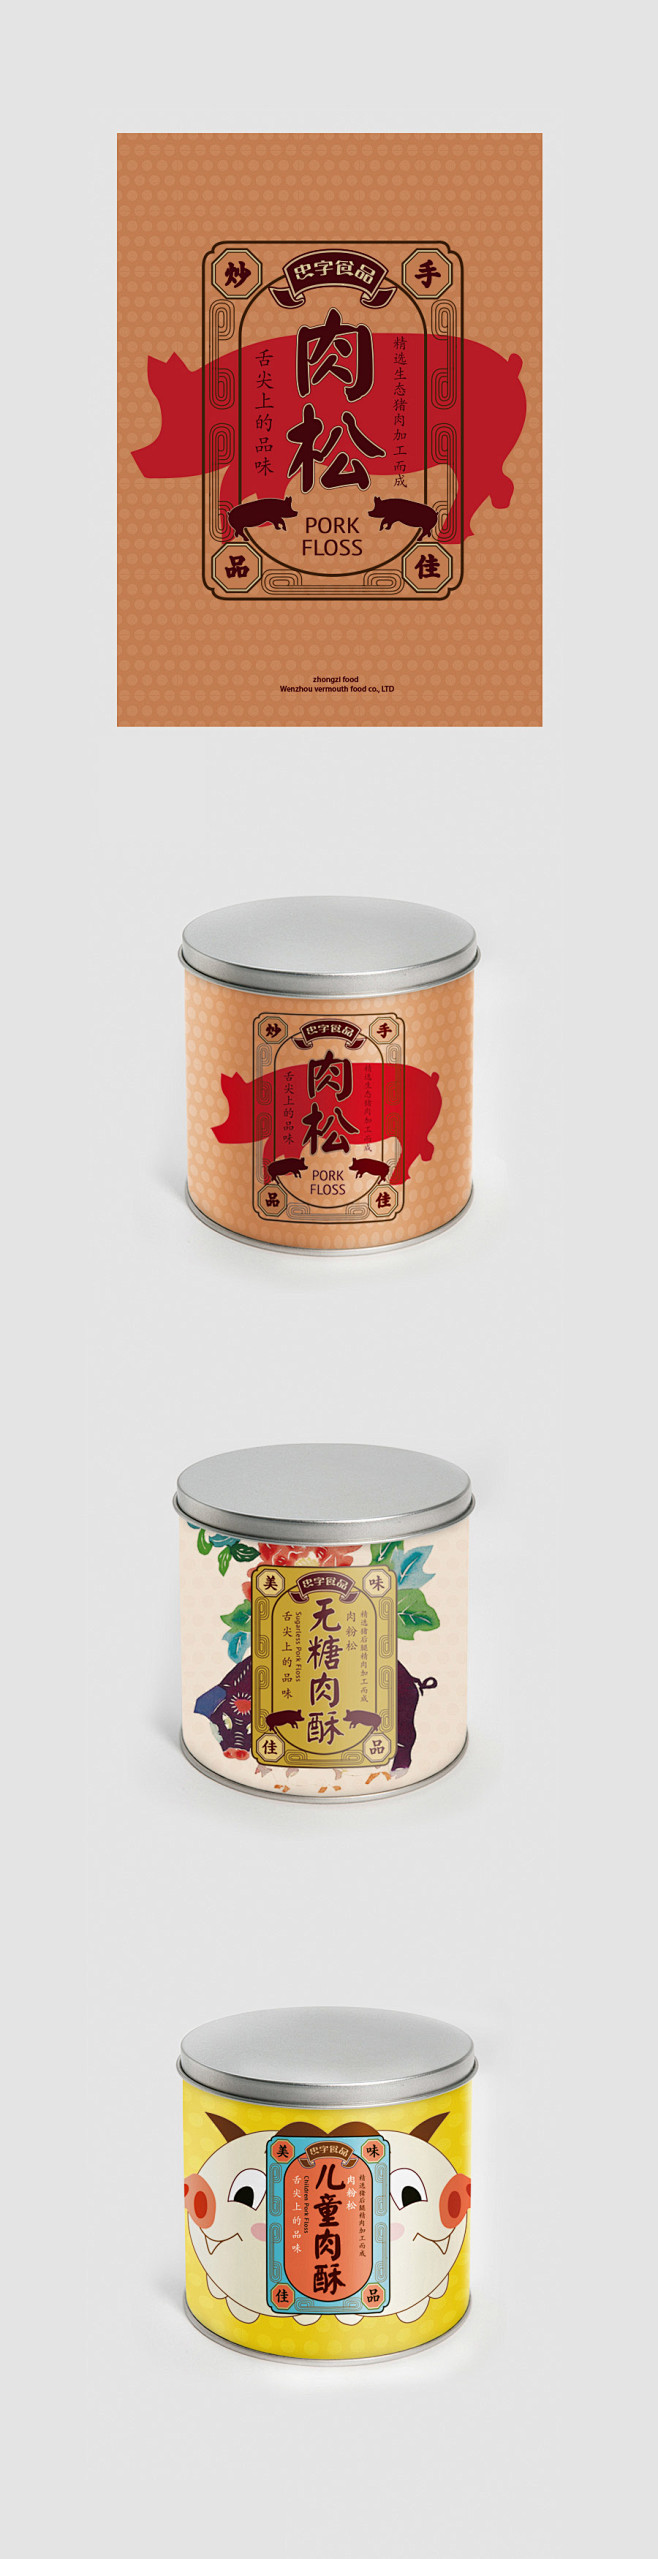 忠字食品包装设计中国风中式传统创意产品包...